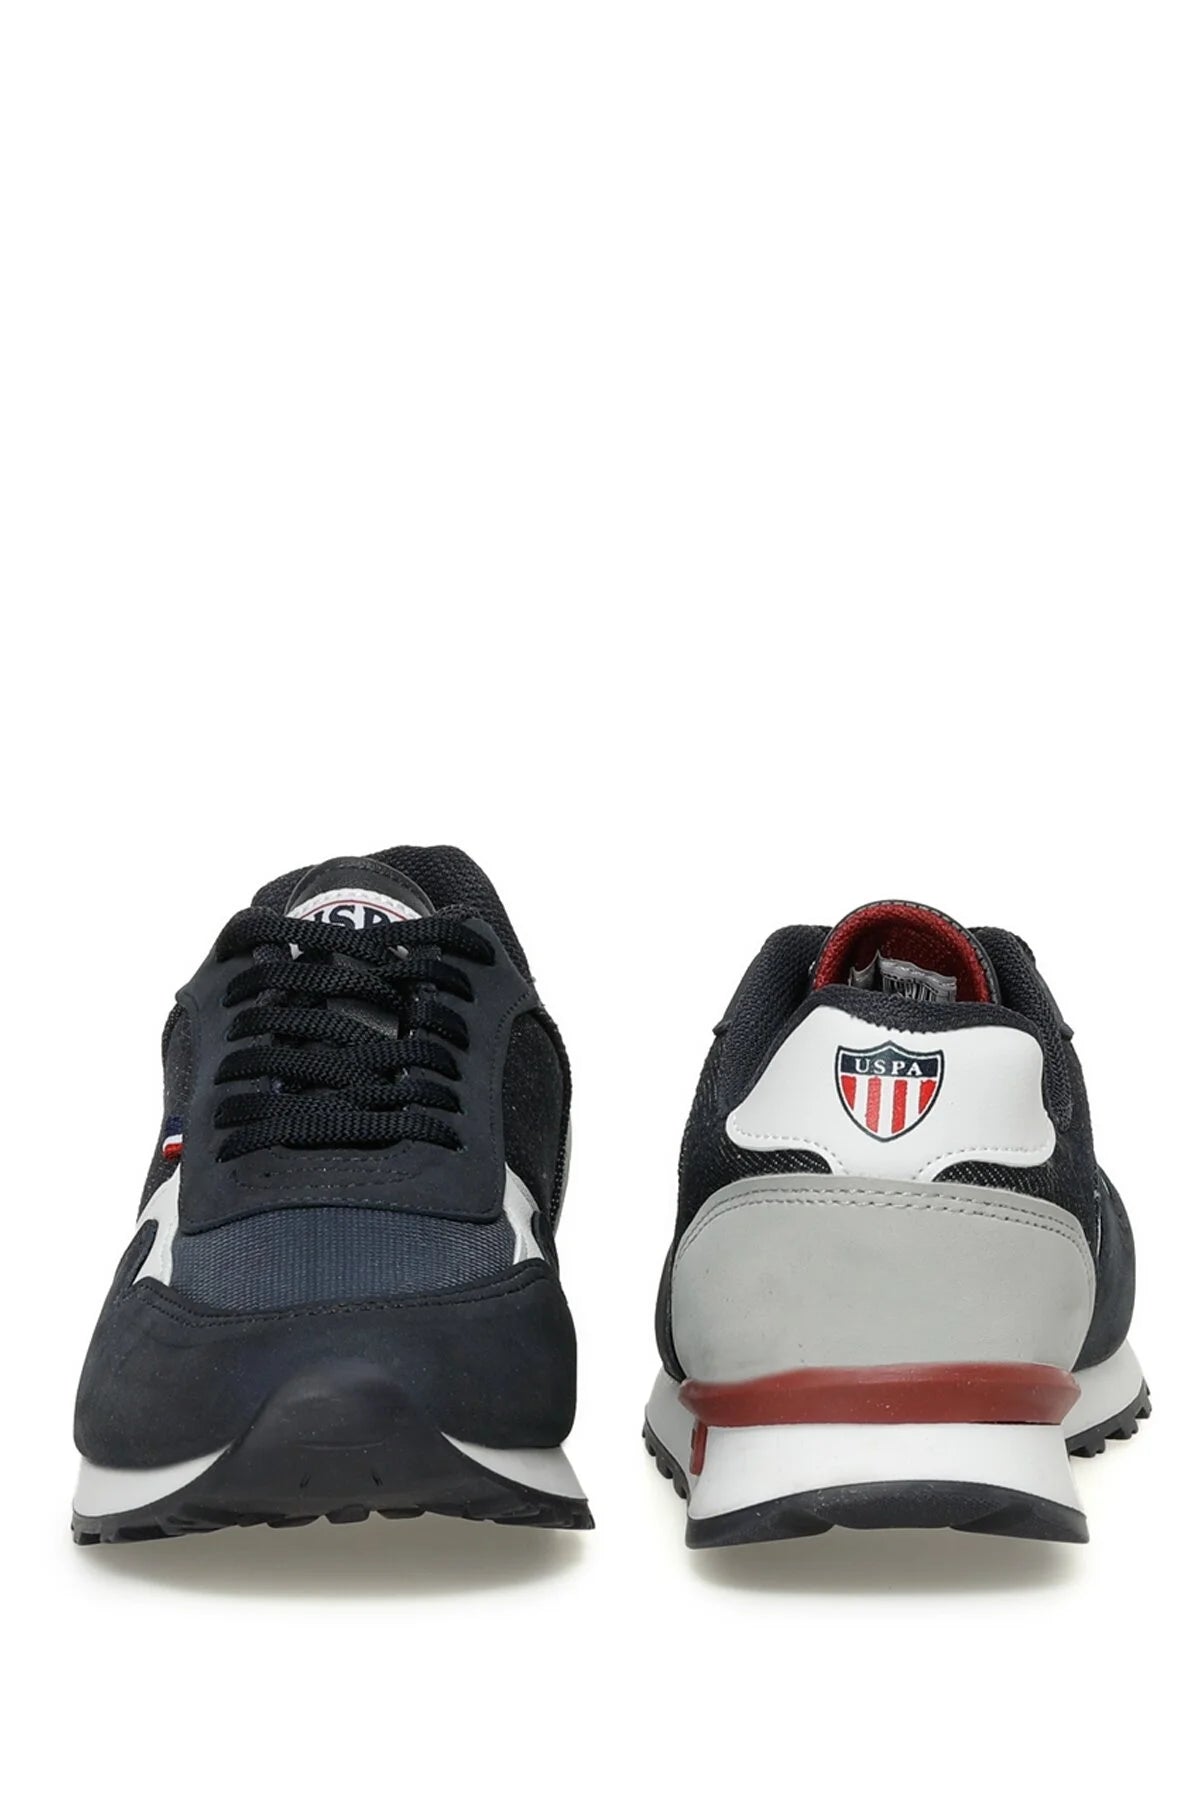 Chaussures De Sport KODA 3FX Noires UNISEXE - 101345550